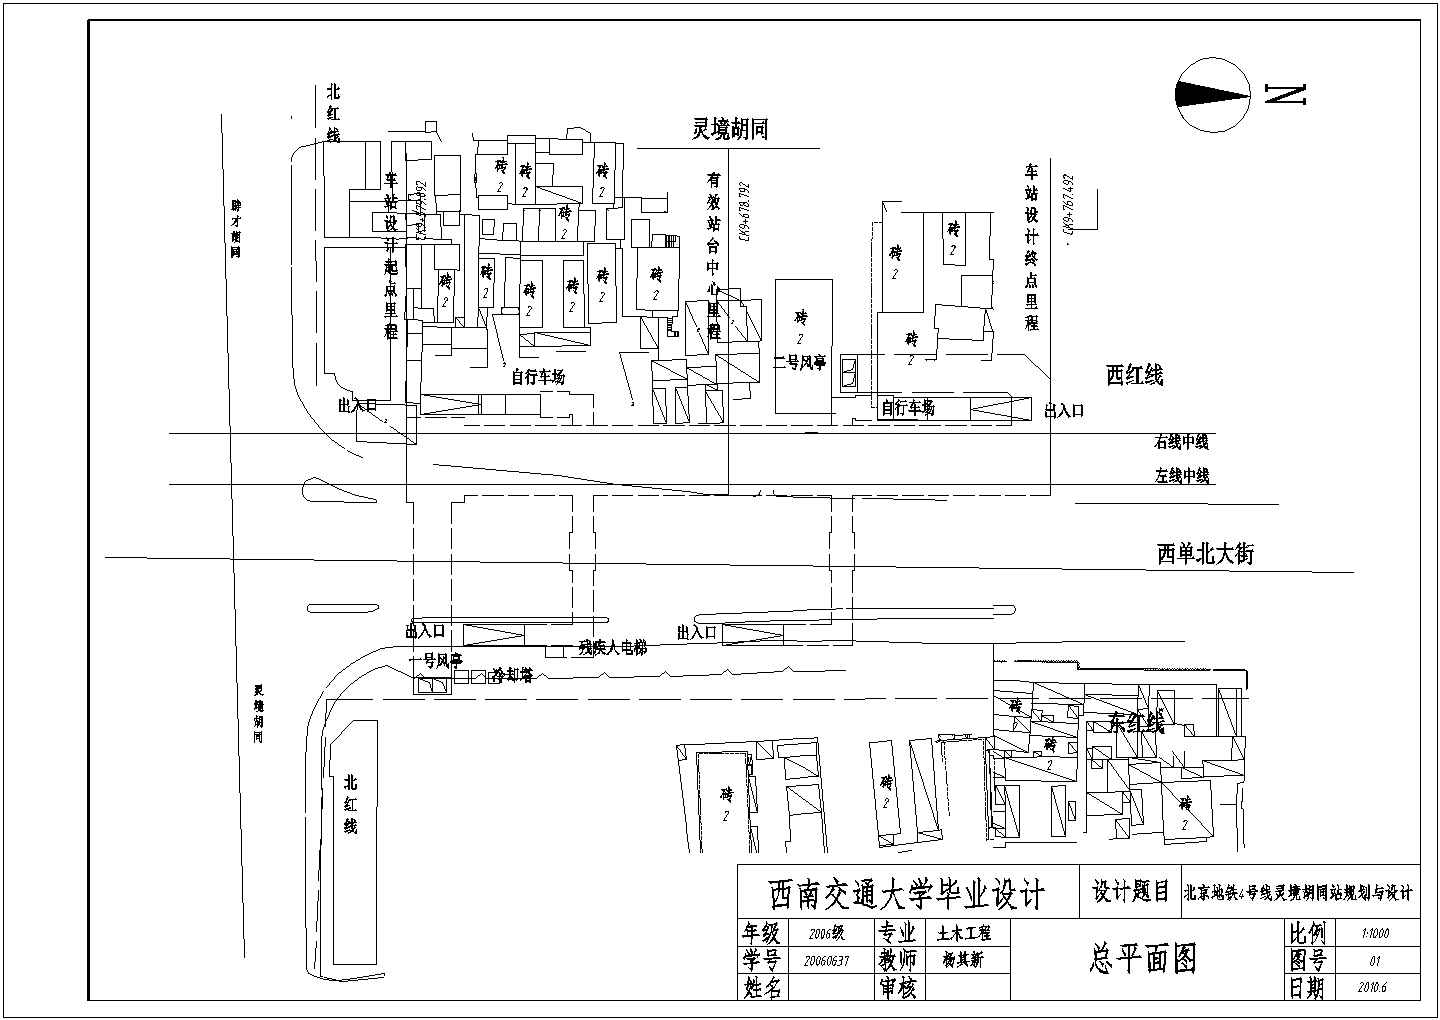 总长188m地下双层岛式车站设计施工图